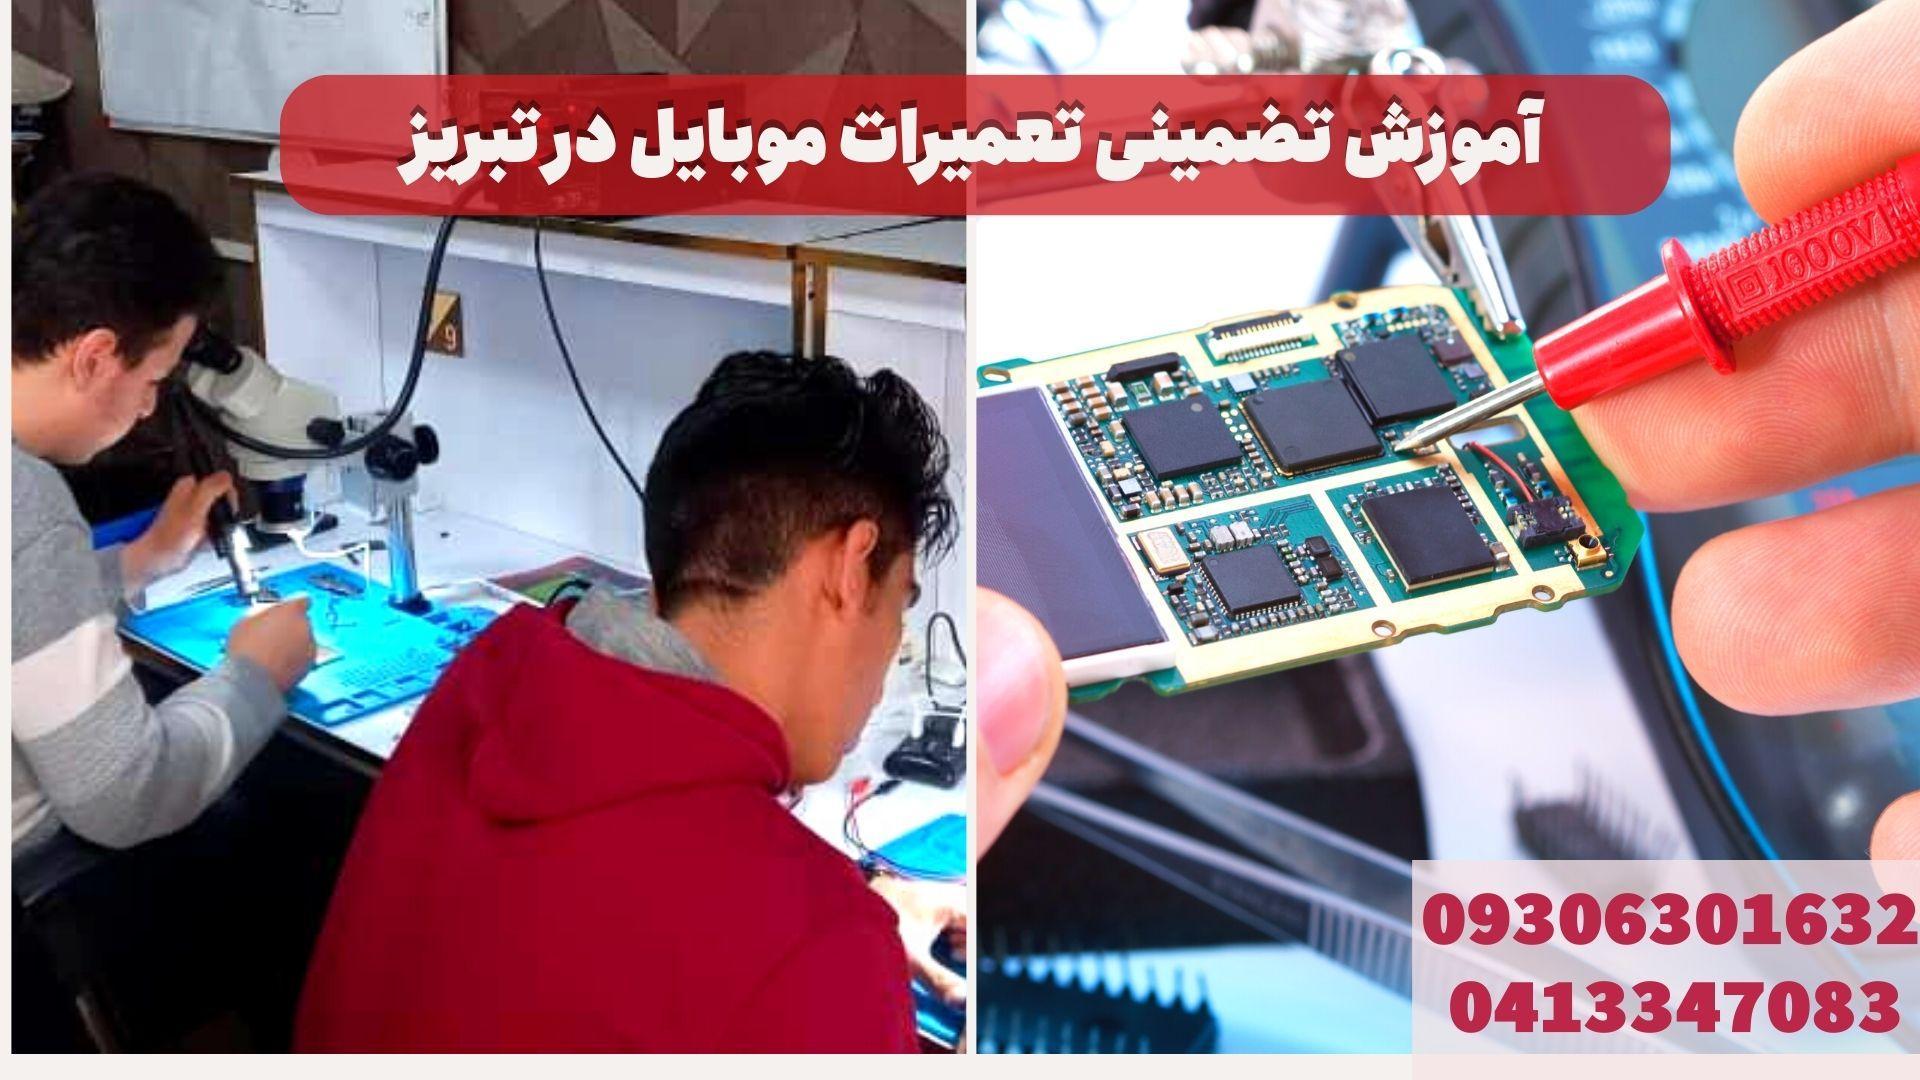 کارآموزان تعمیرات موبایل در تبریز در حال یادگیری تعمیرات